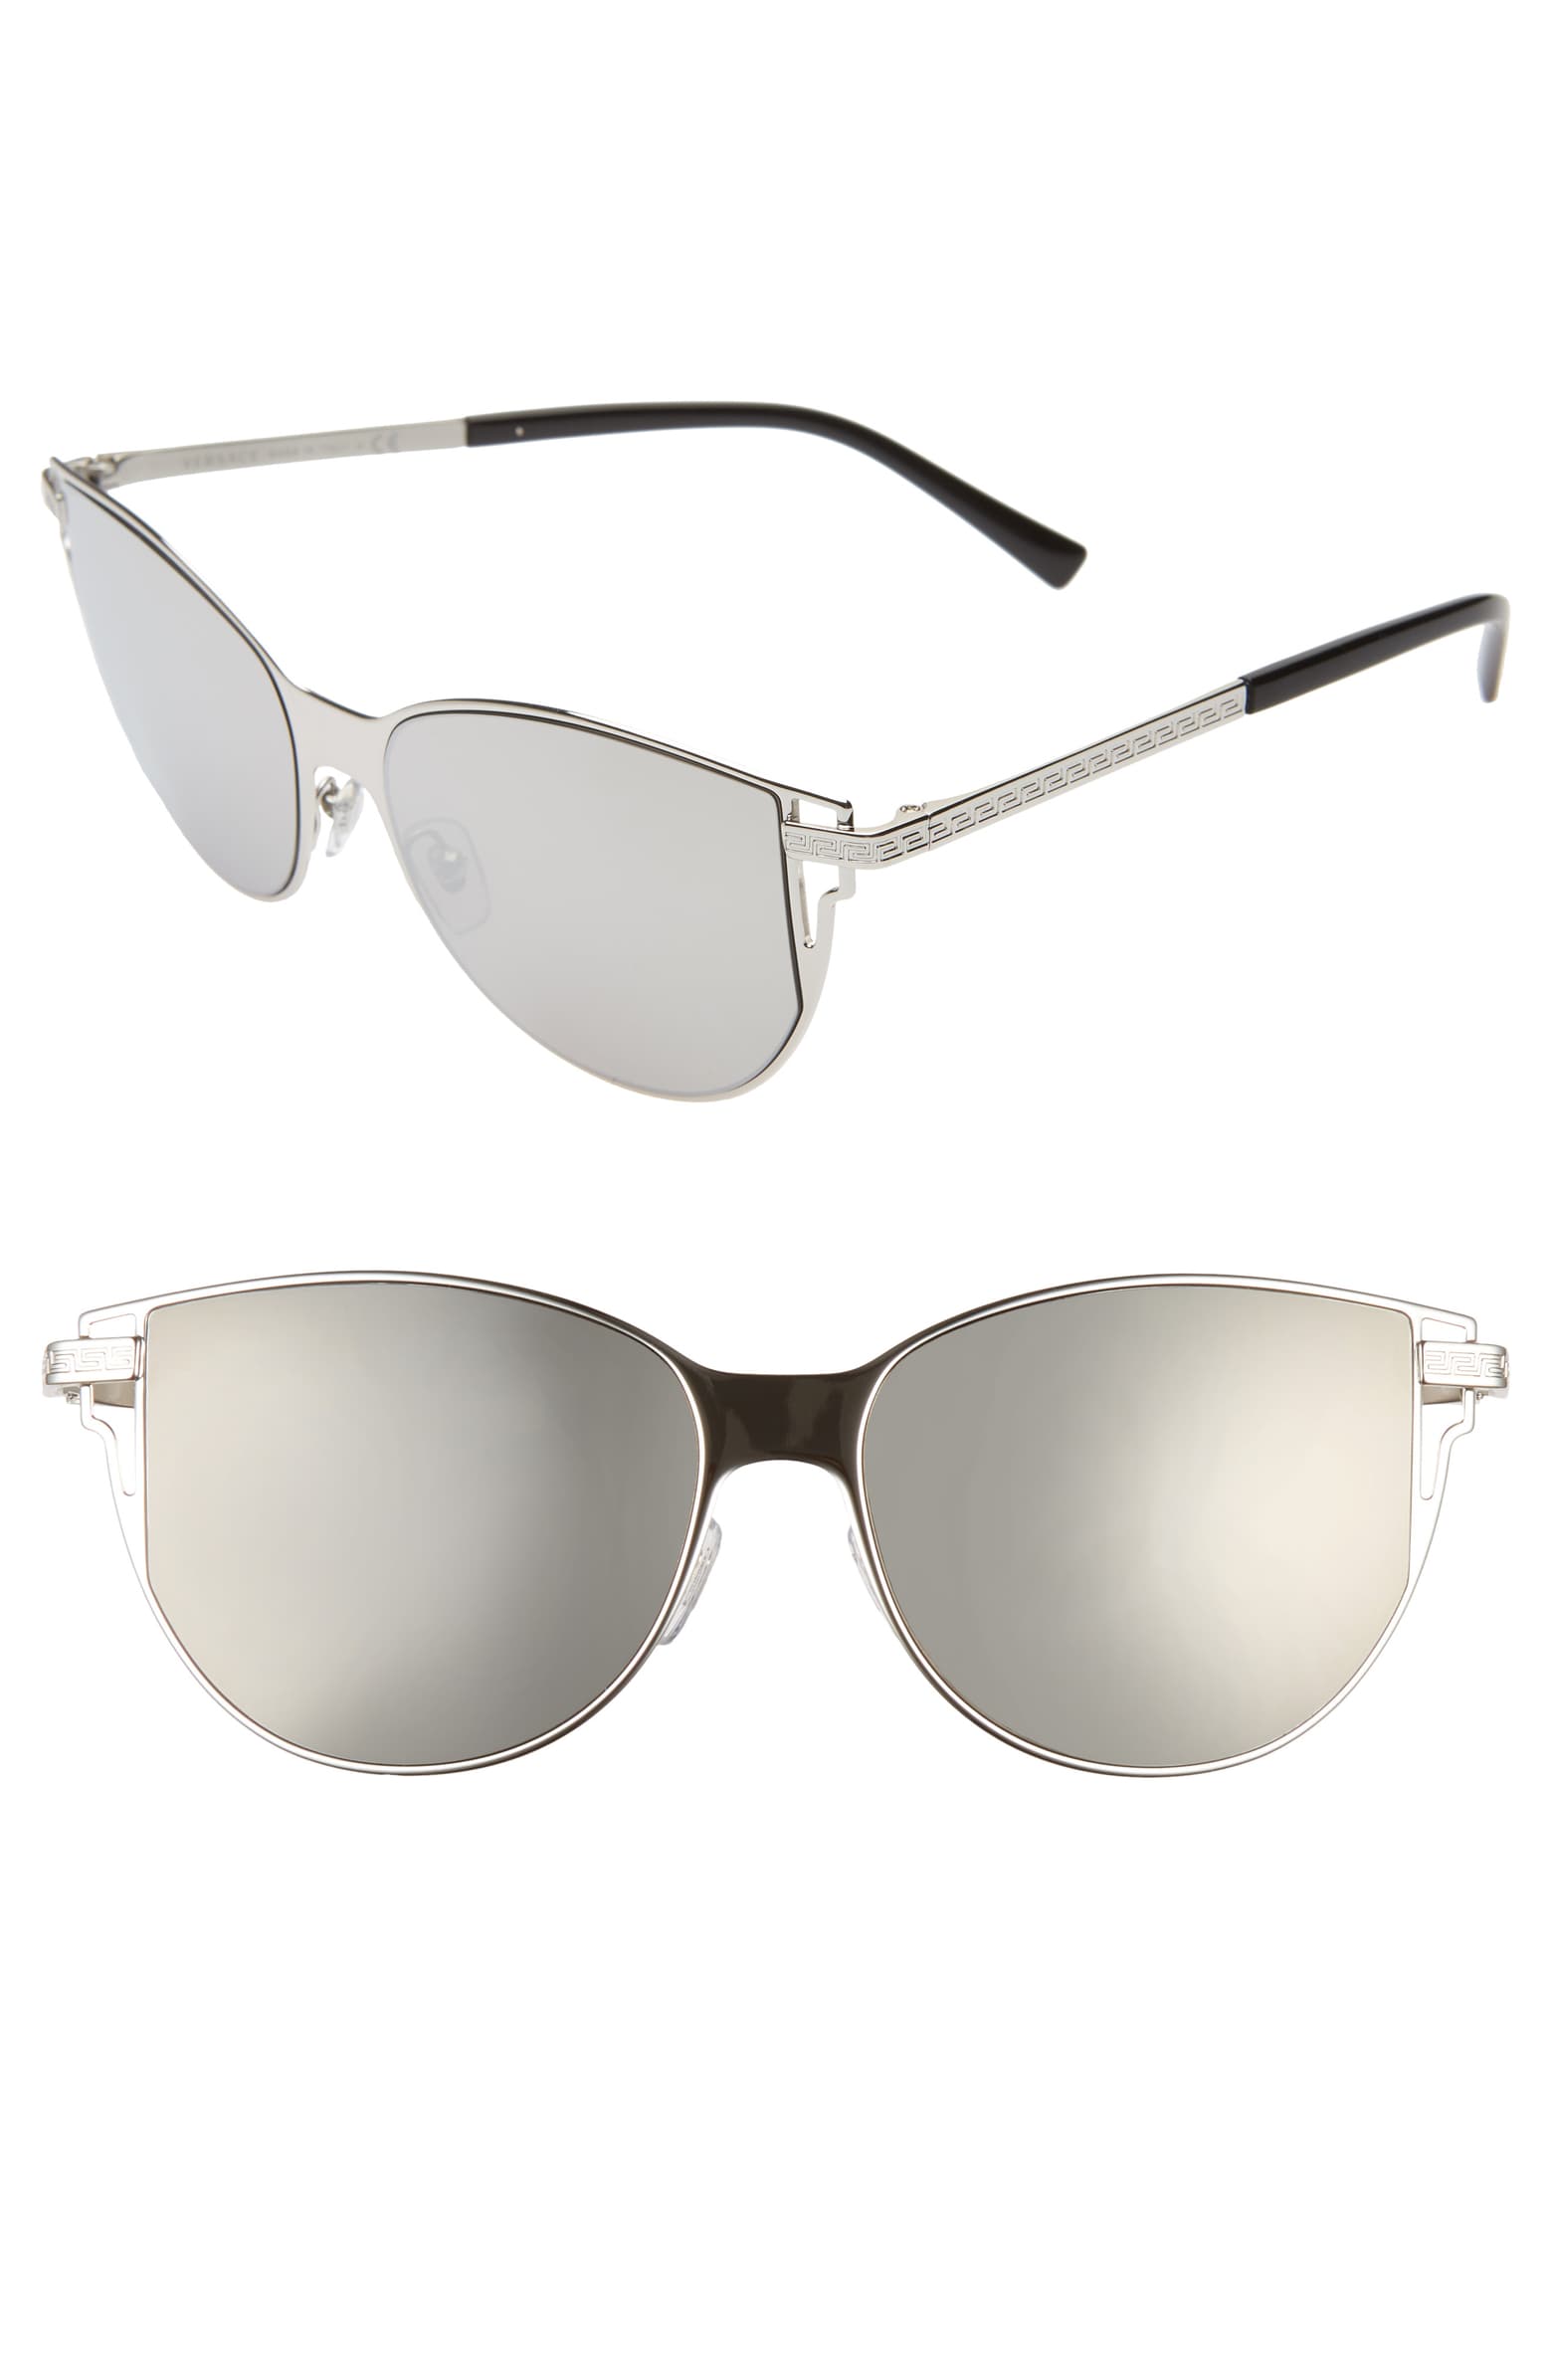 mirrored versace sunglasses